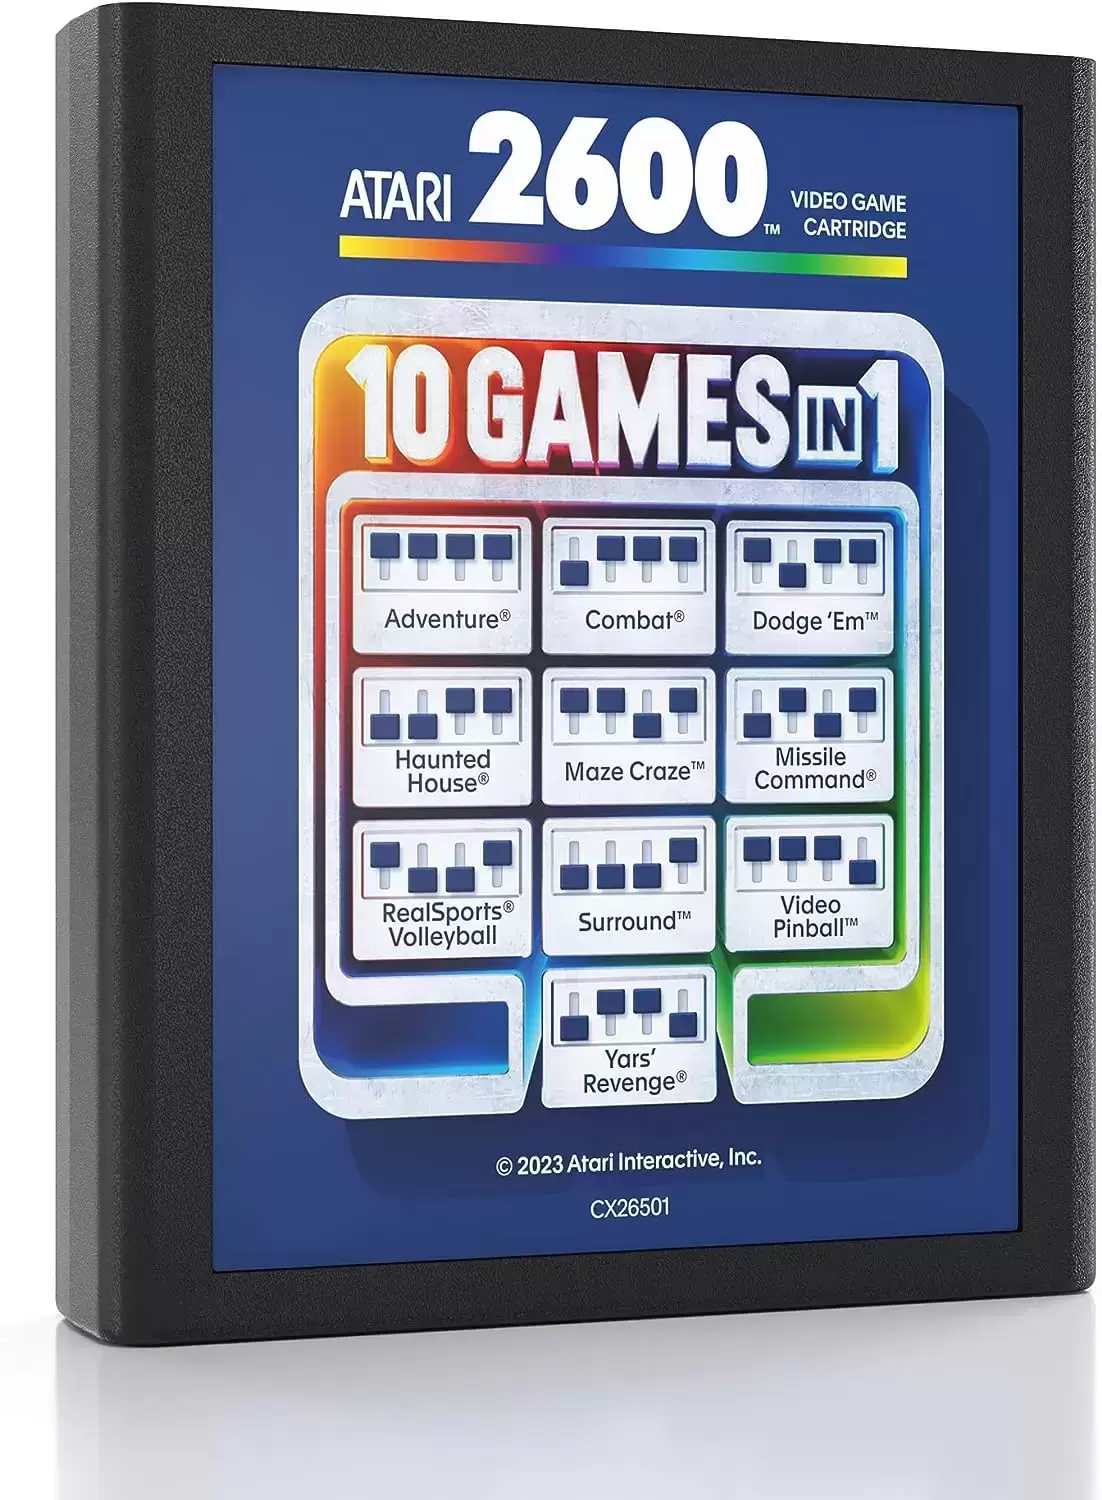 Atari 2600 - Atari 2600 Plus 10 Games in 1